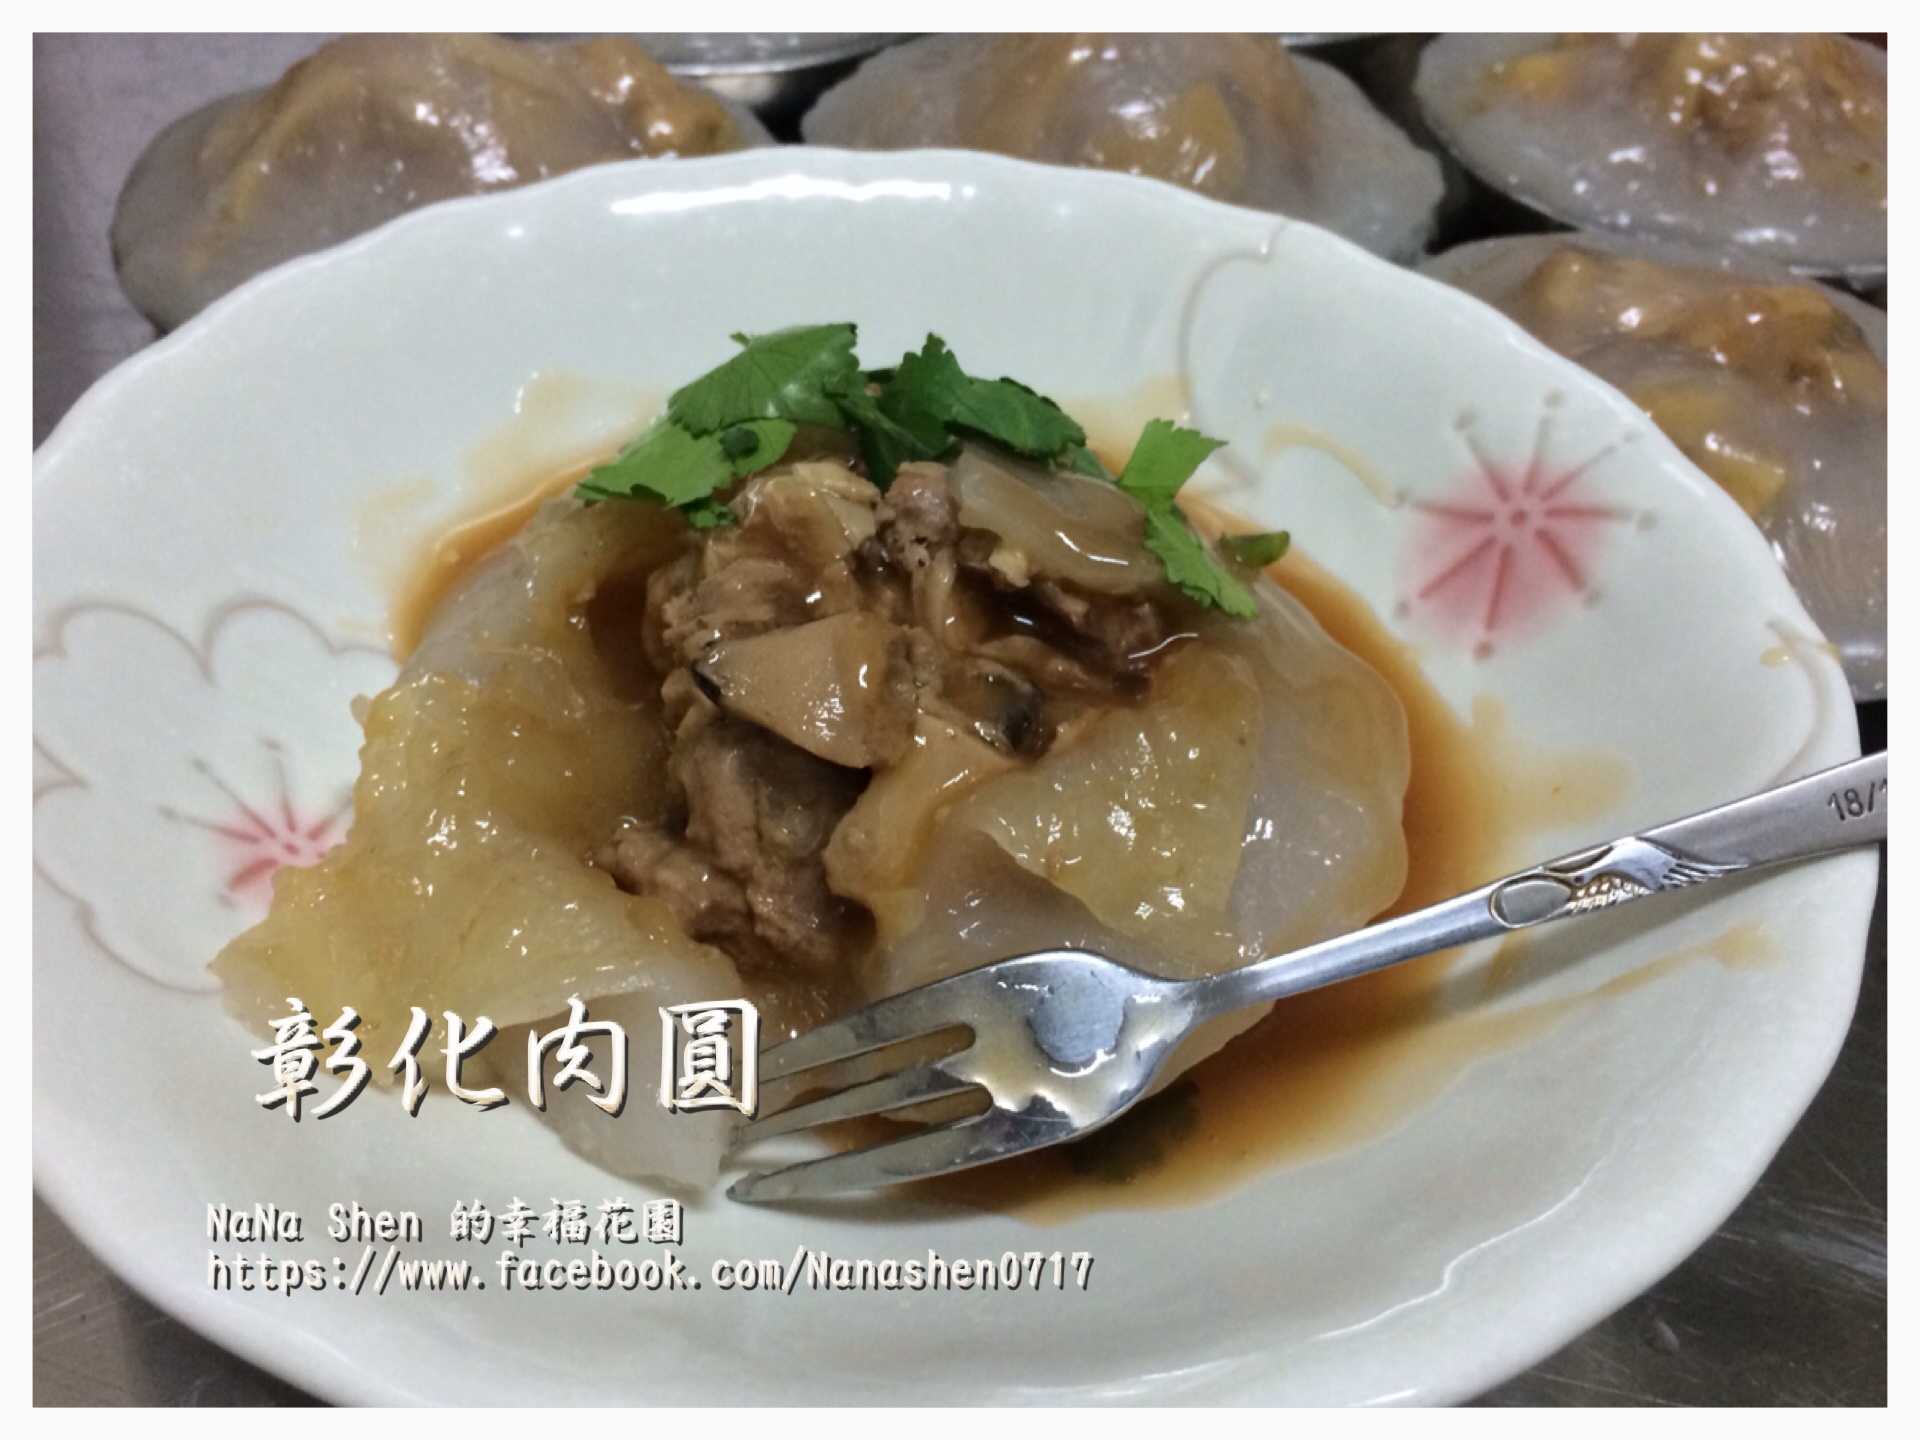 彰化でめっちゃおいしい肉圓を食べたよ＜北斗肉圓生＞ | 台湾で牛肉麺を喰らわない